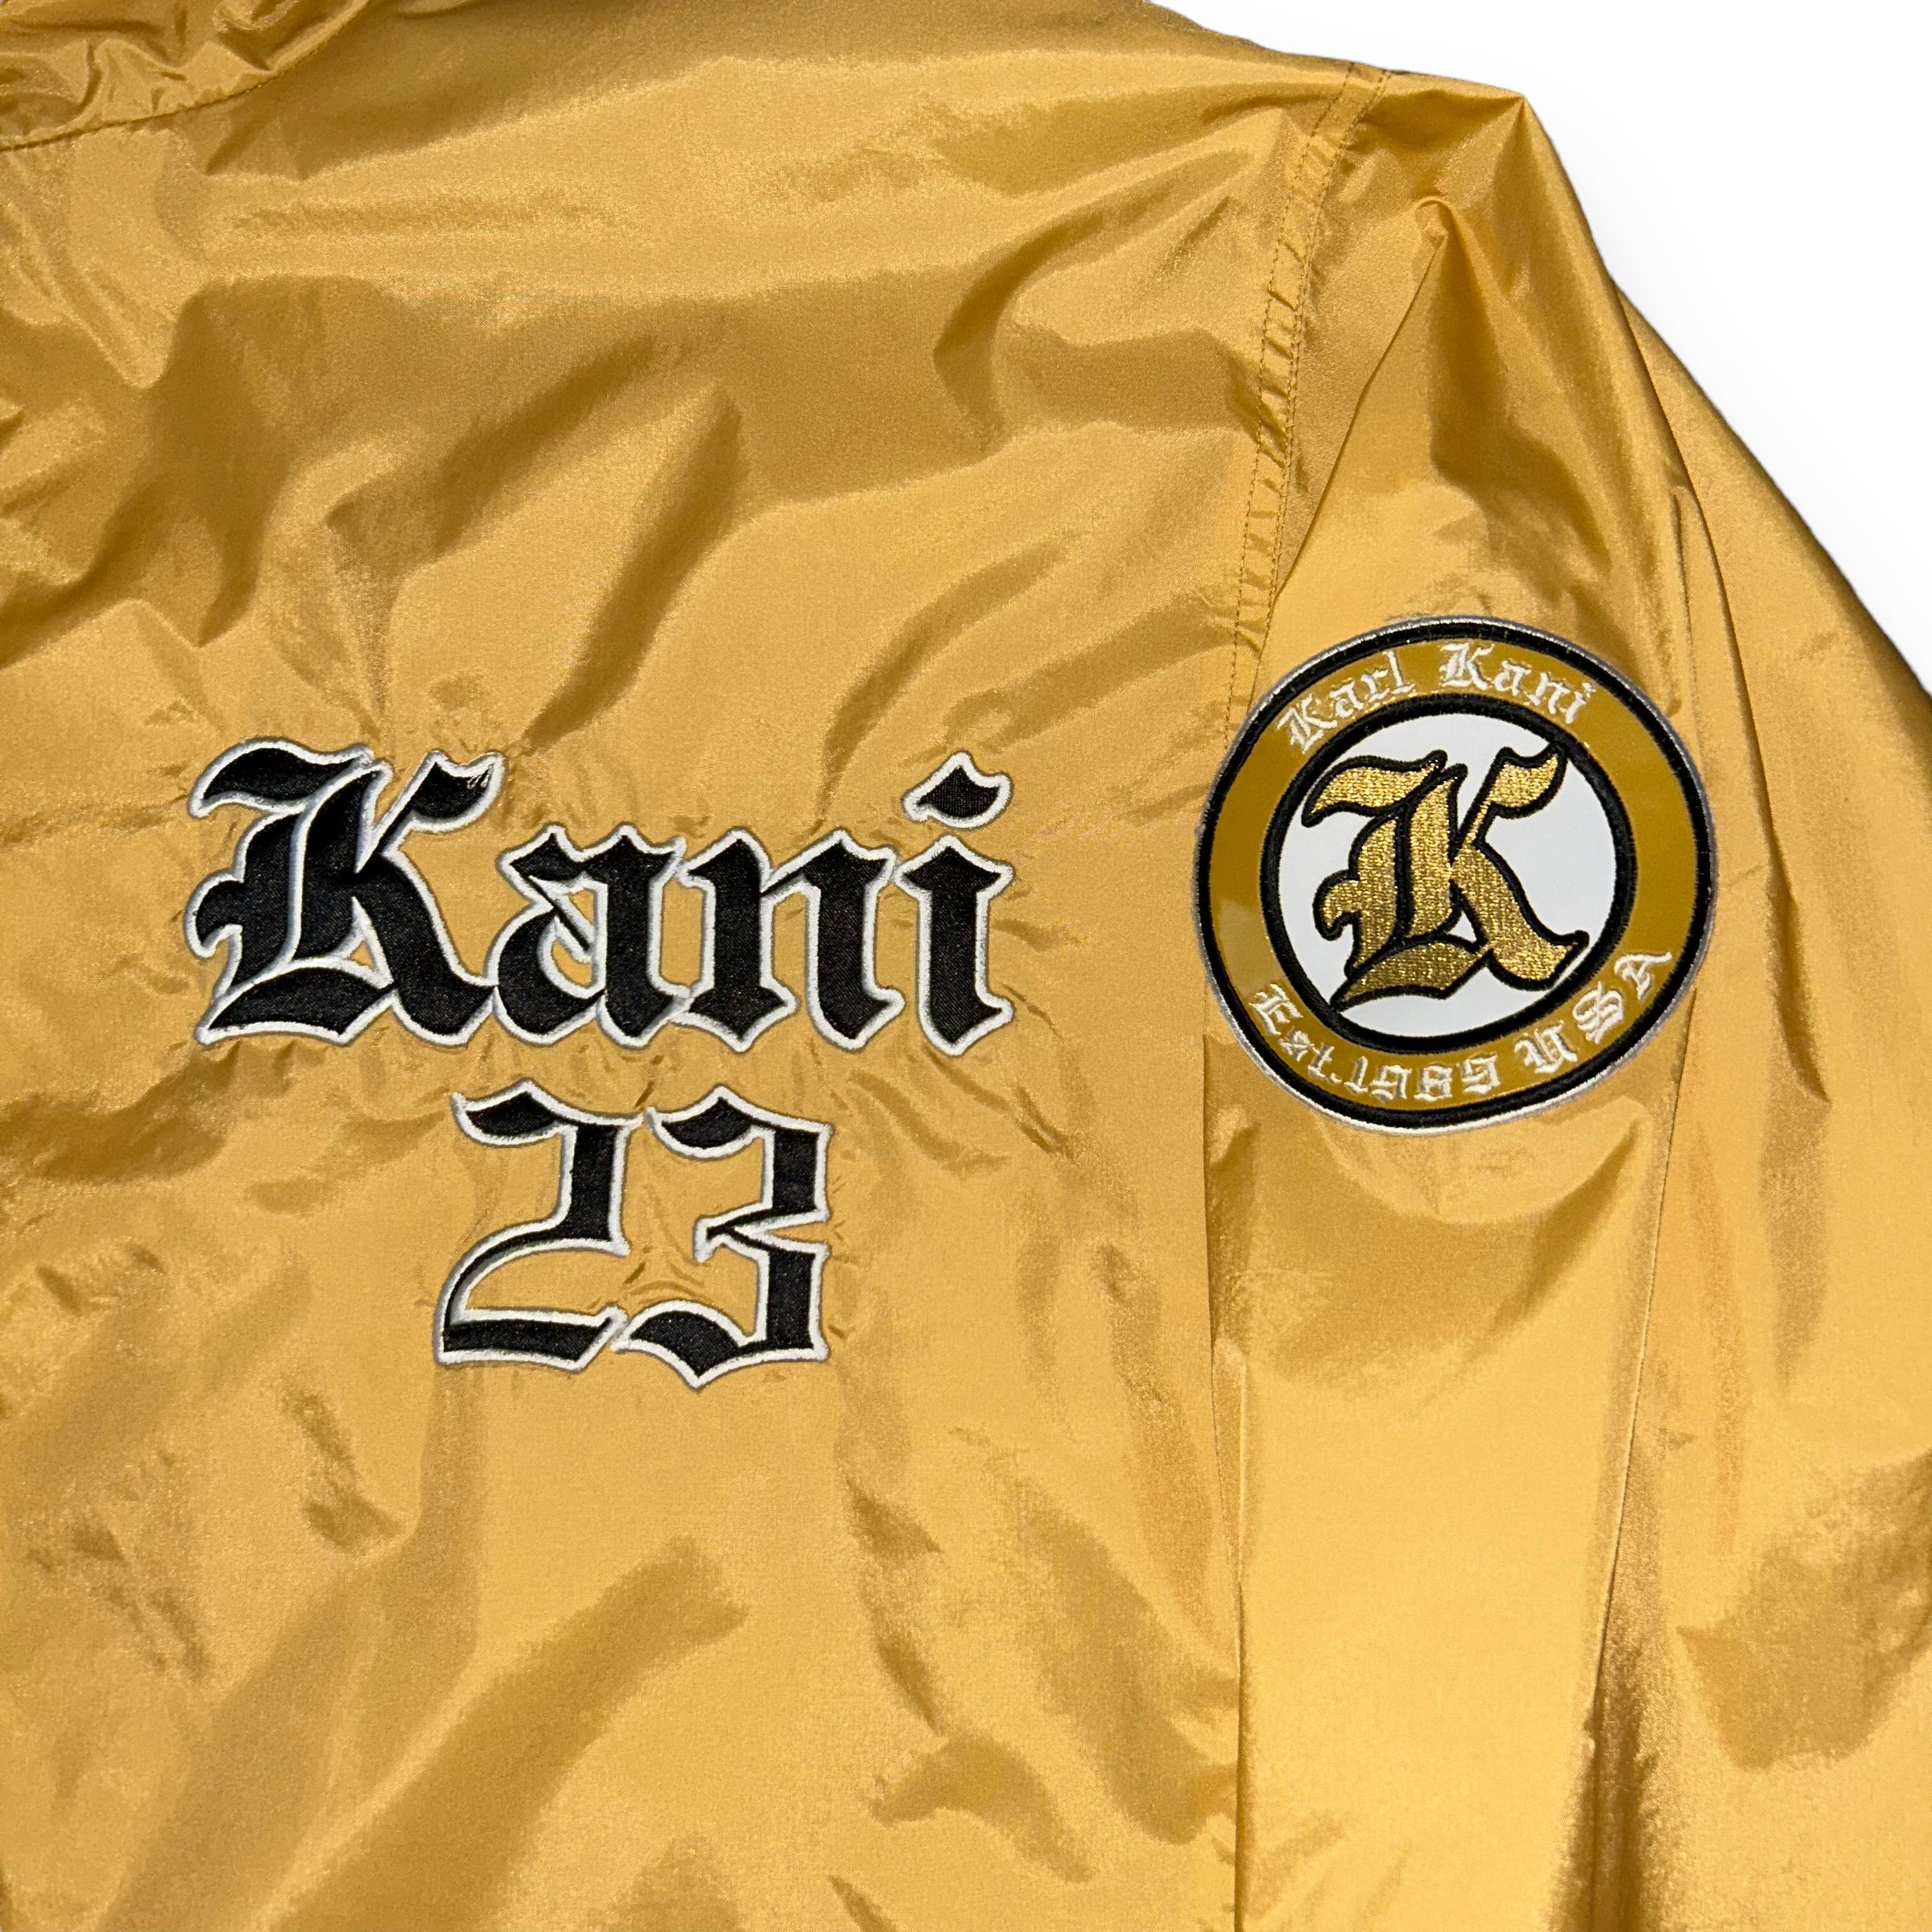 Karl Kani Bronx Vintage Suit (XL)